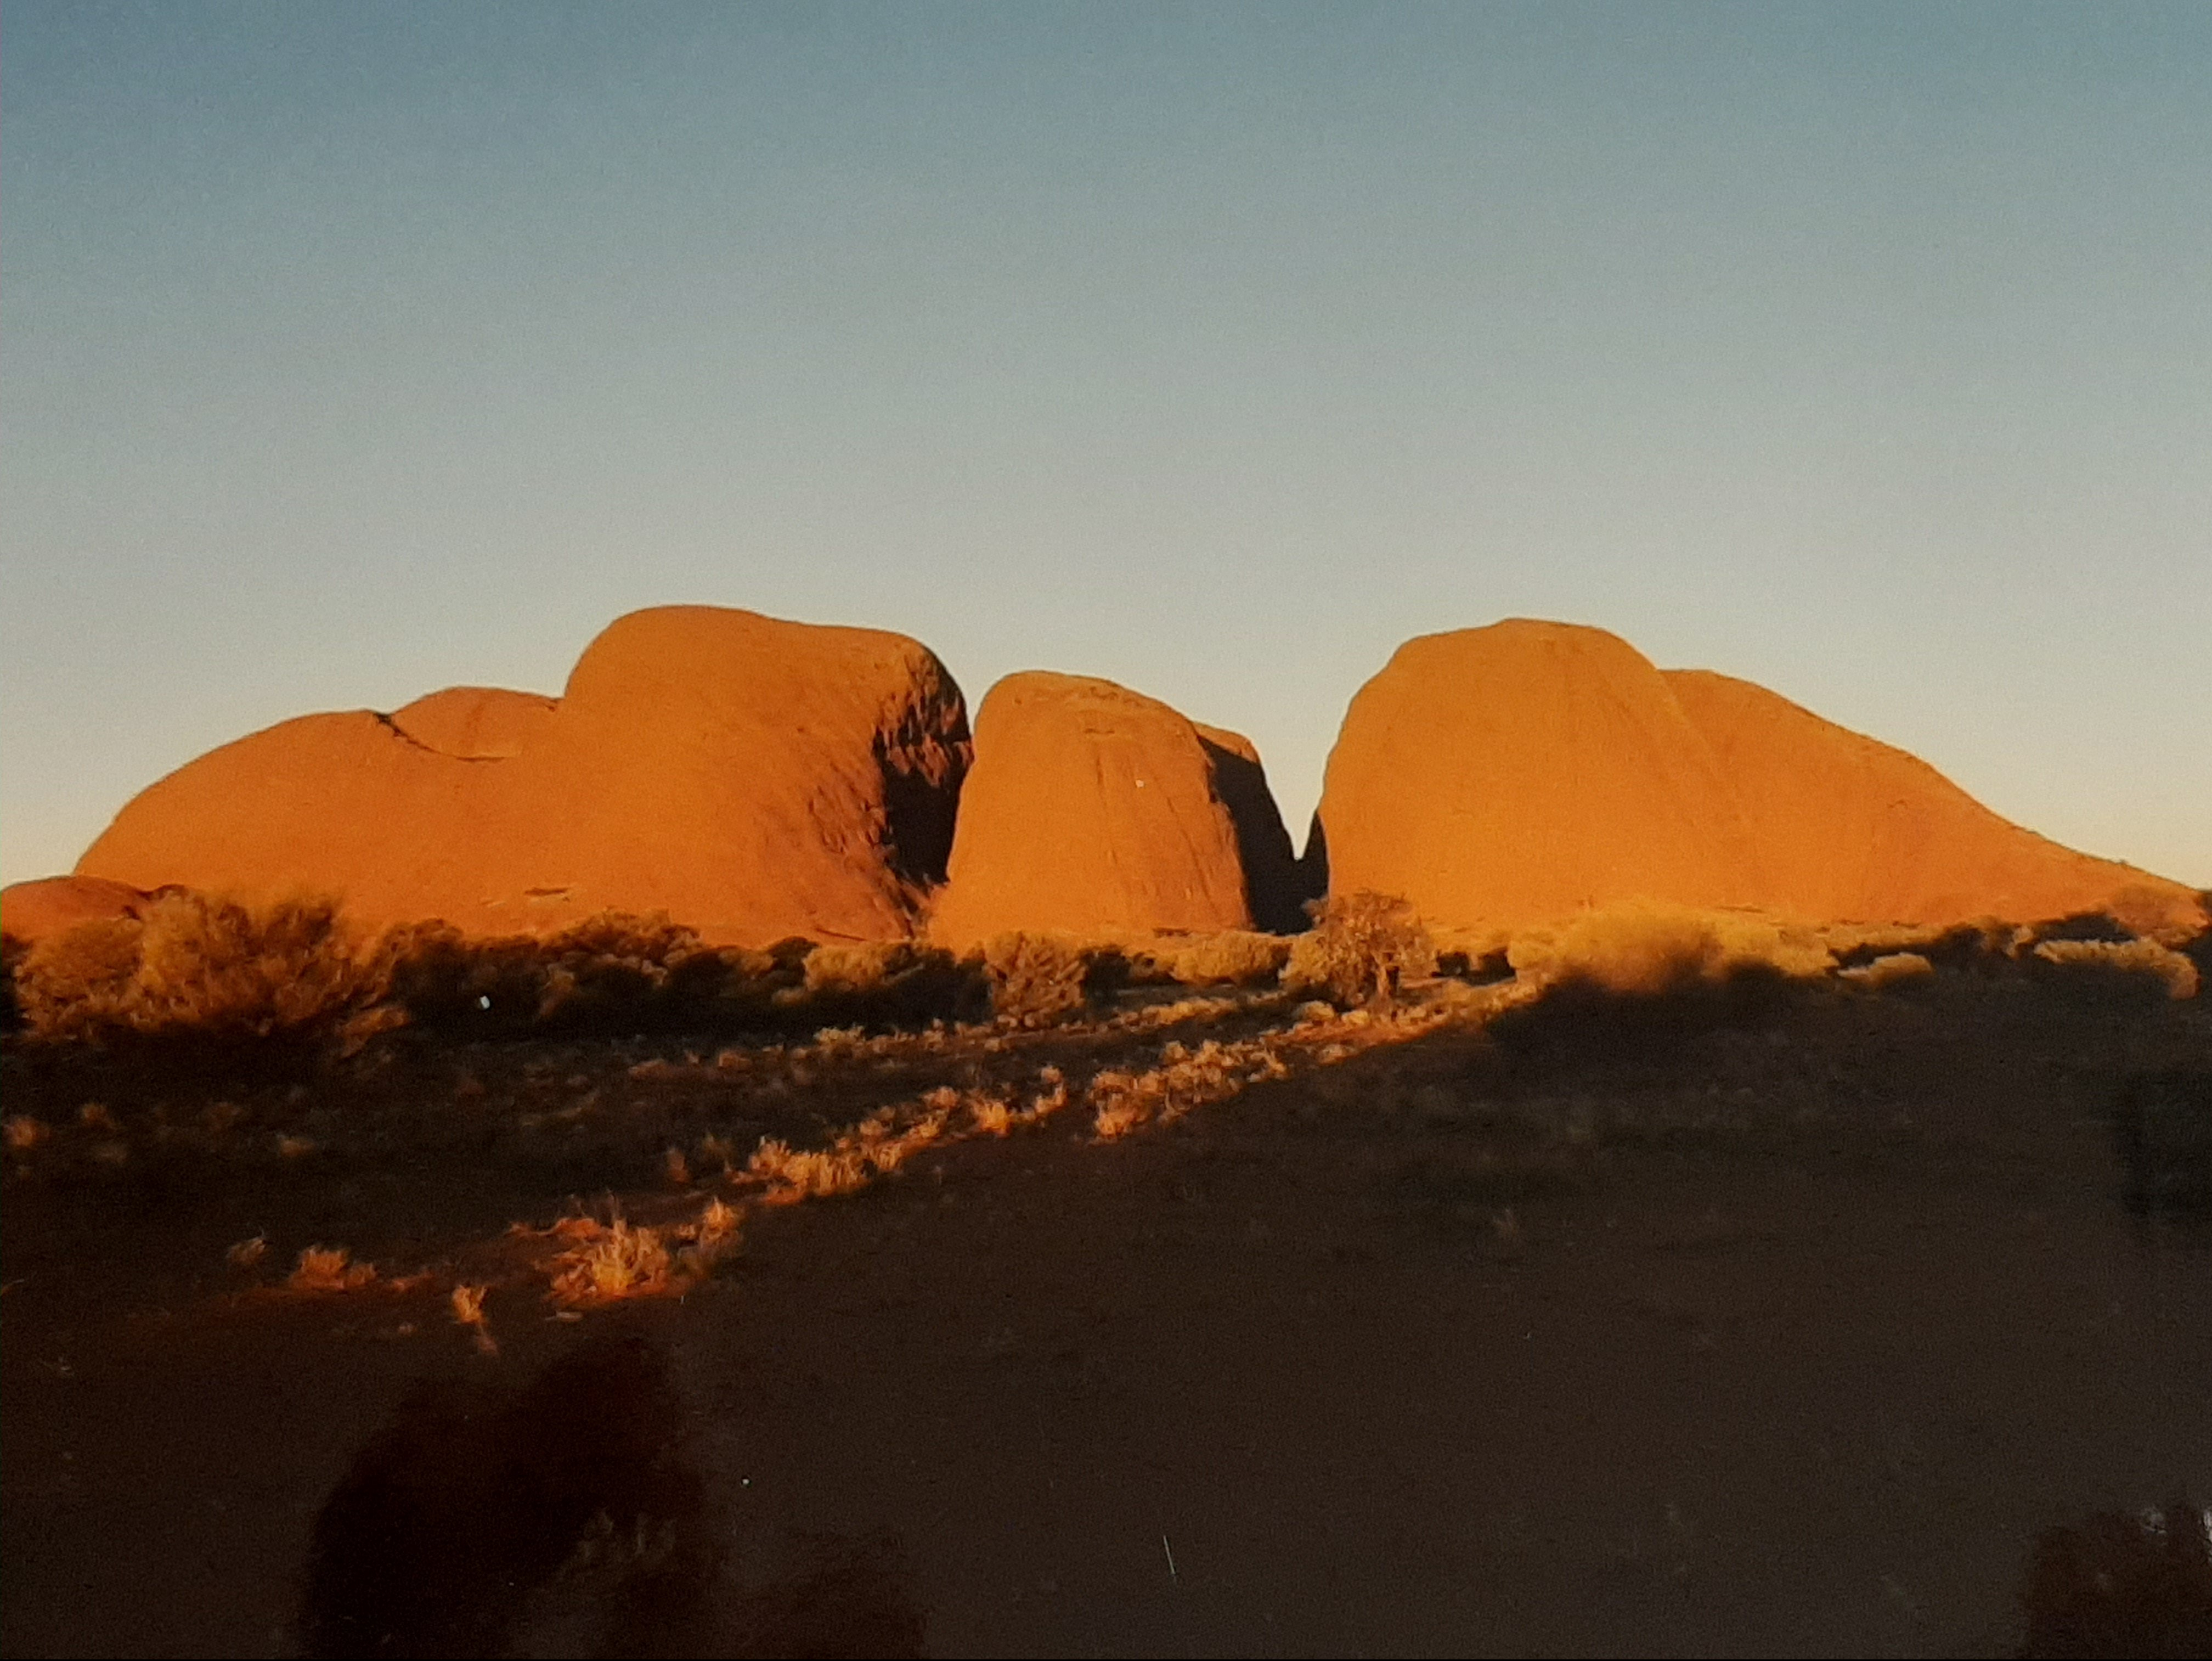 The Olgas - Kata Tjuta - outback - Australia